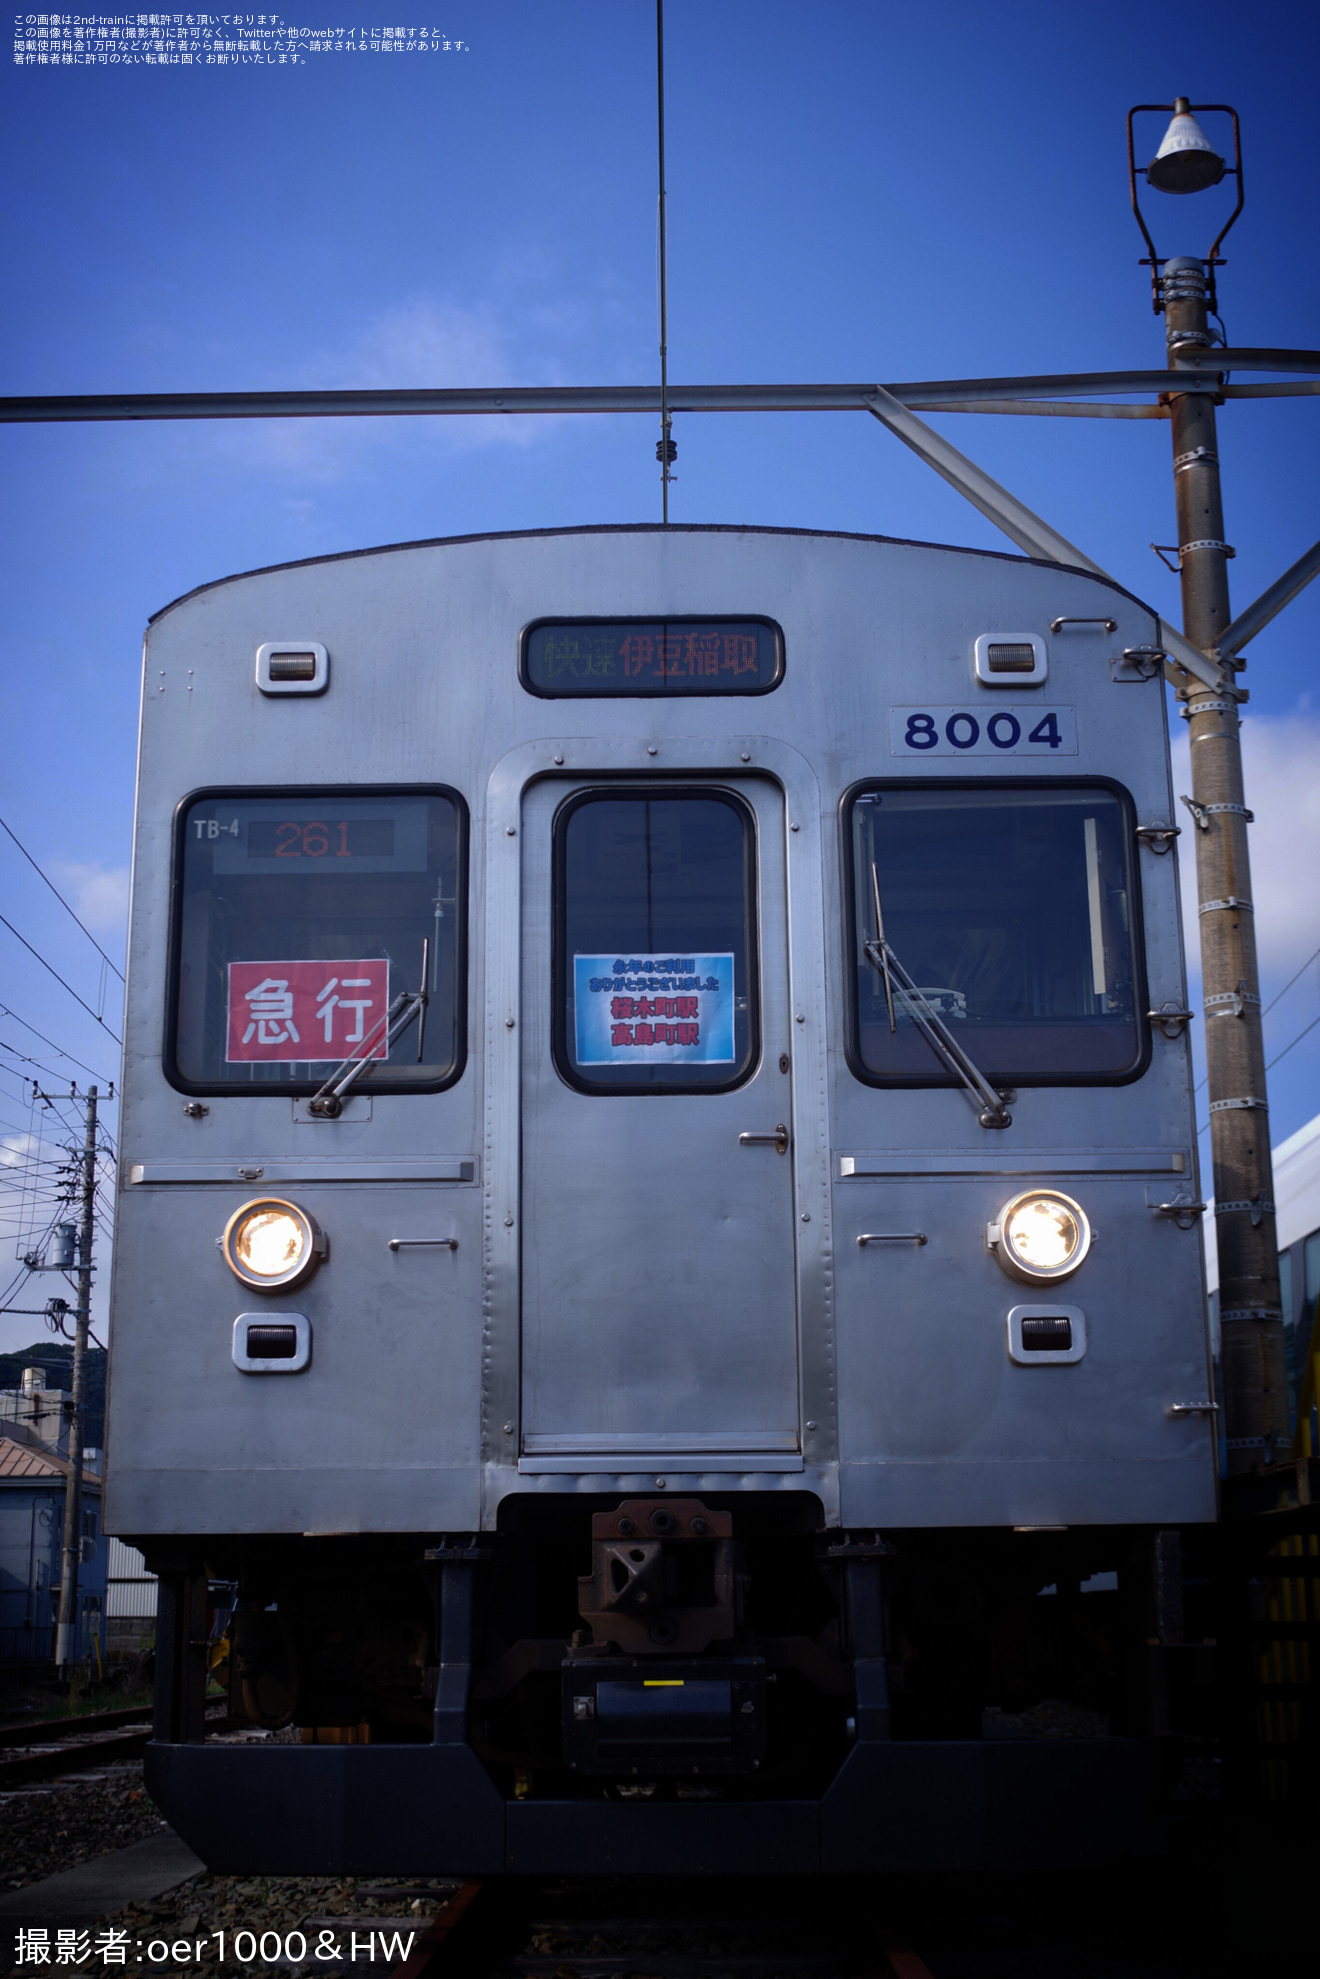 【伊豆急】8000系TB-4編成を使用した貸切列車の拡大写真